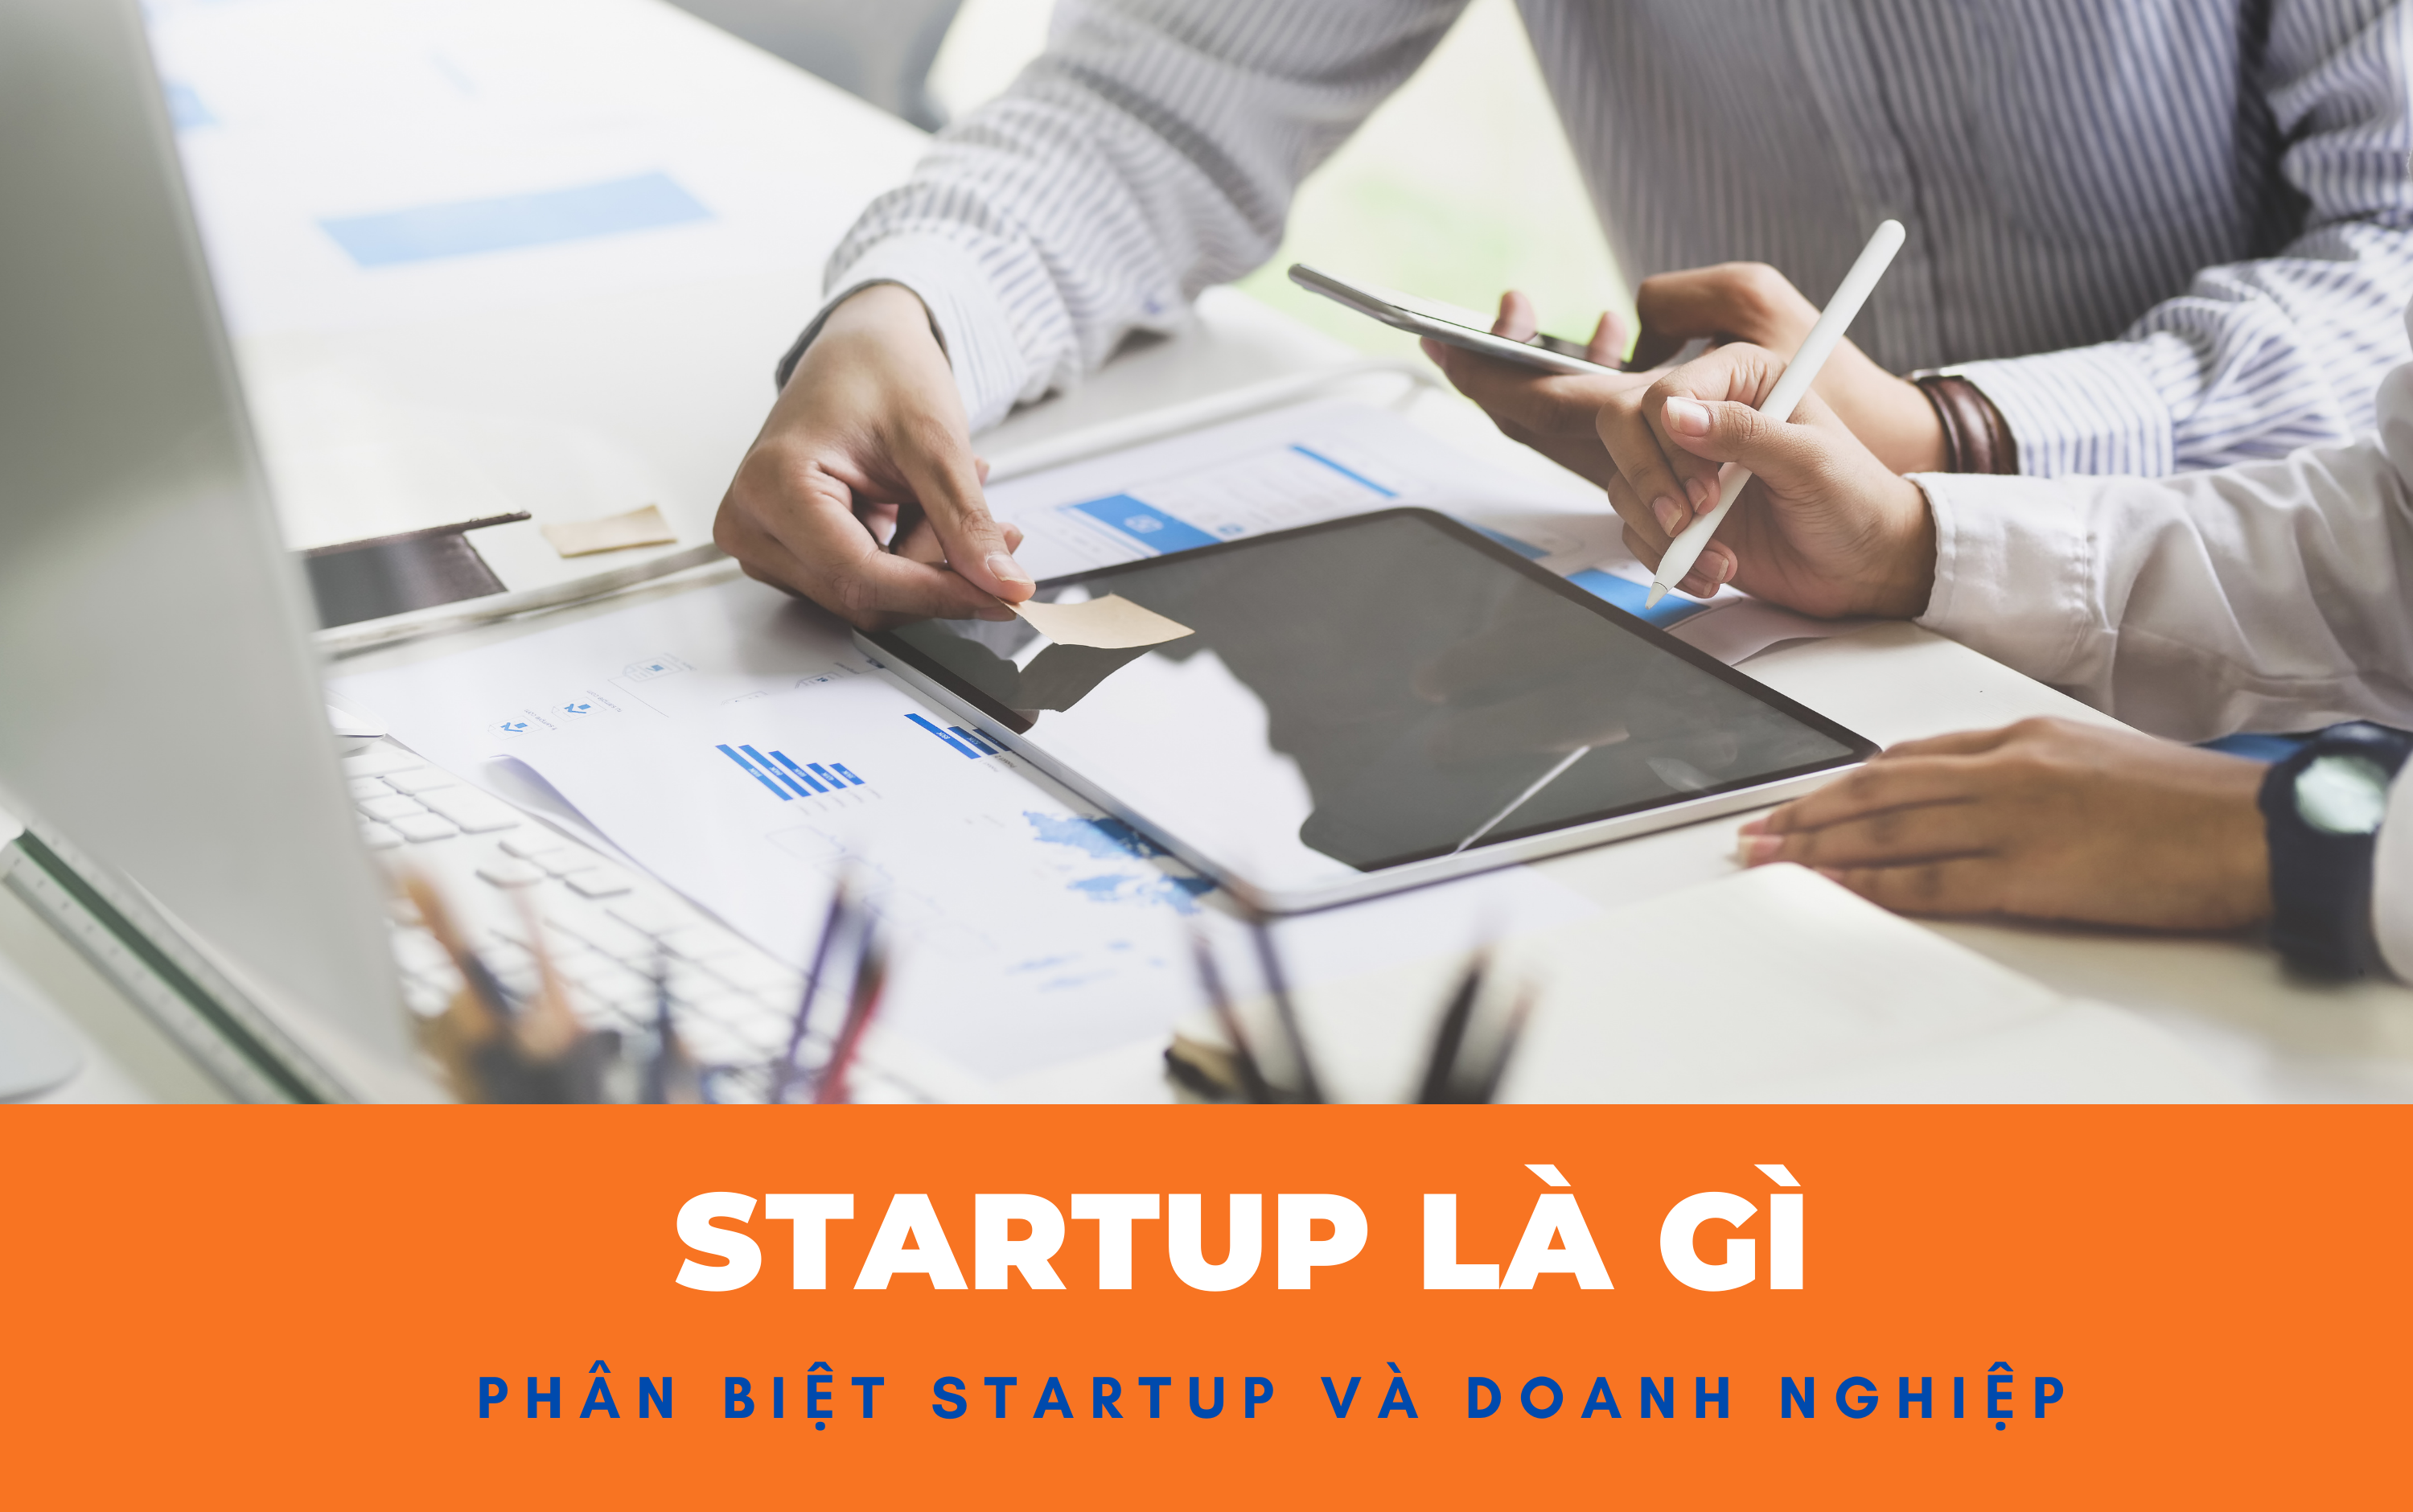 Startup là gì? Phân biệt Startup và doanh nghiệp nhỏ